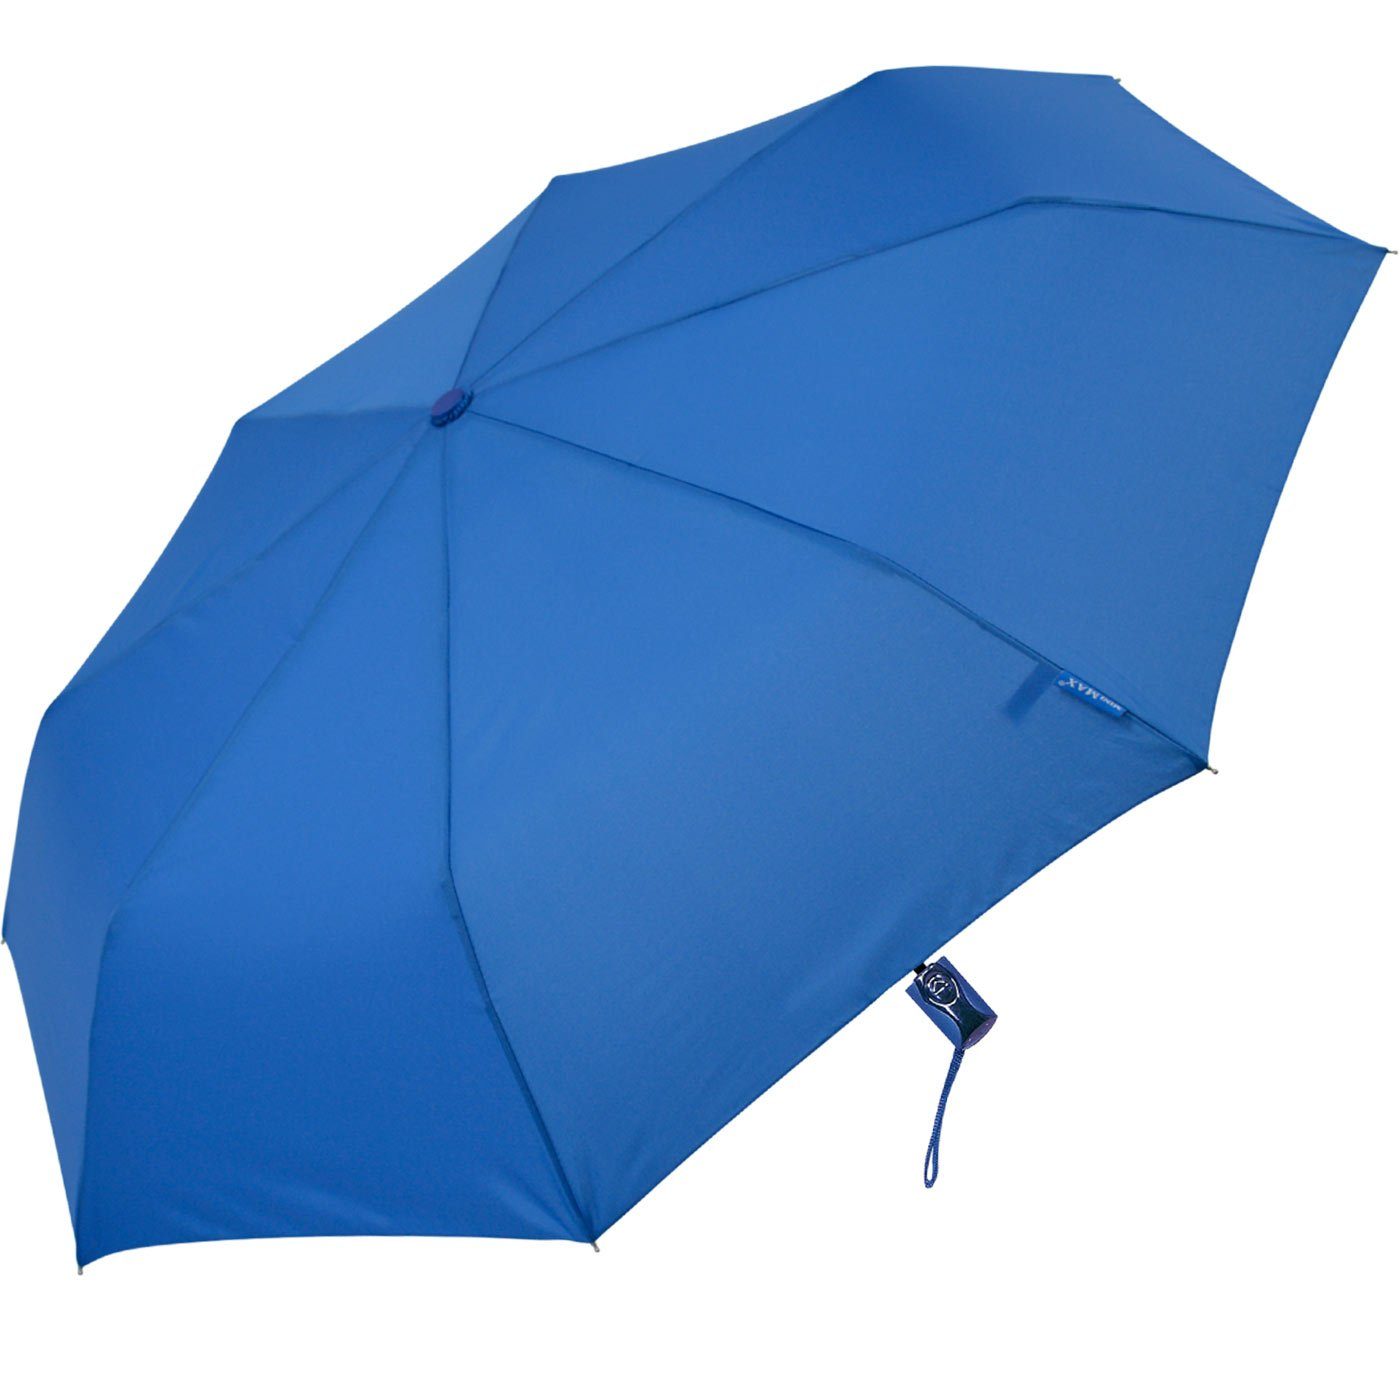 mit Impliva Begleiter windsicher der zuverlässige Taschenregenschirm royal-blau miniMAX® Auf-Zu-Automatik uni,